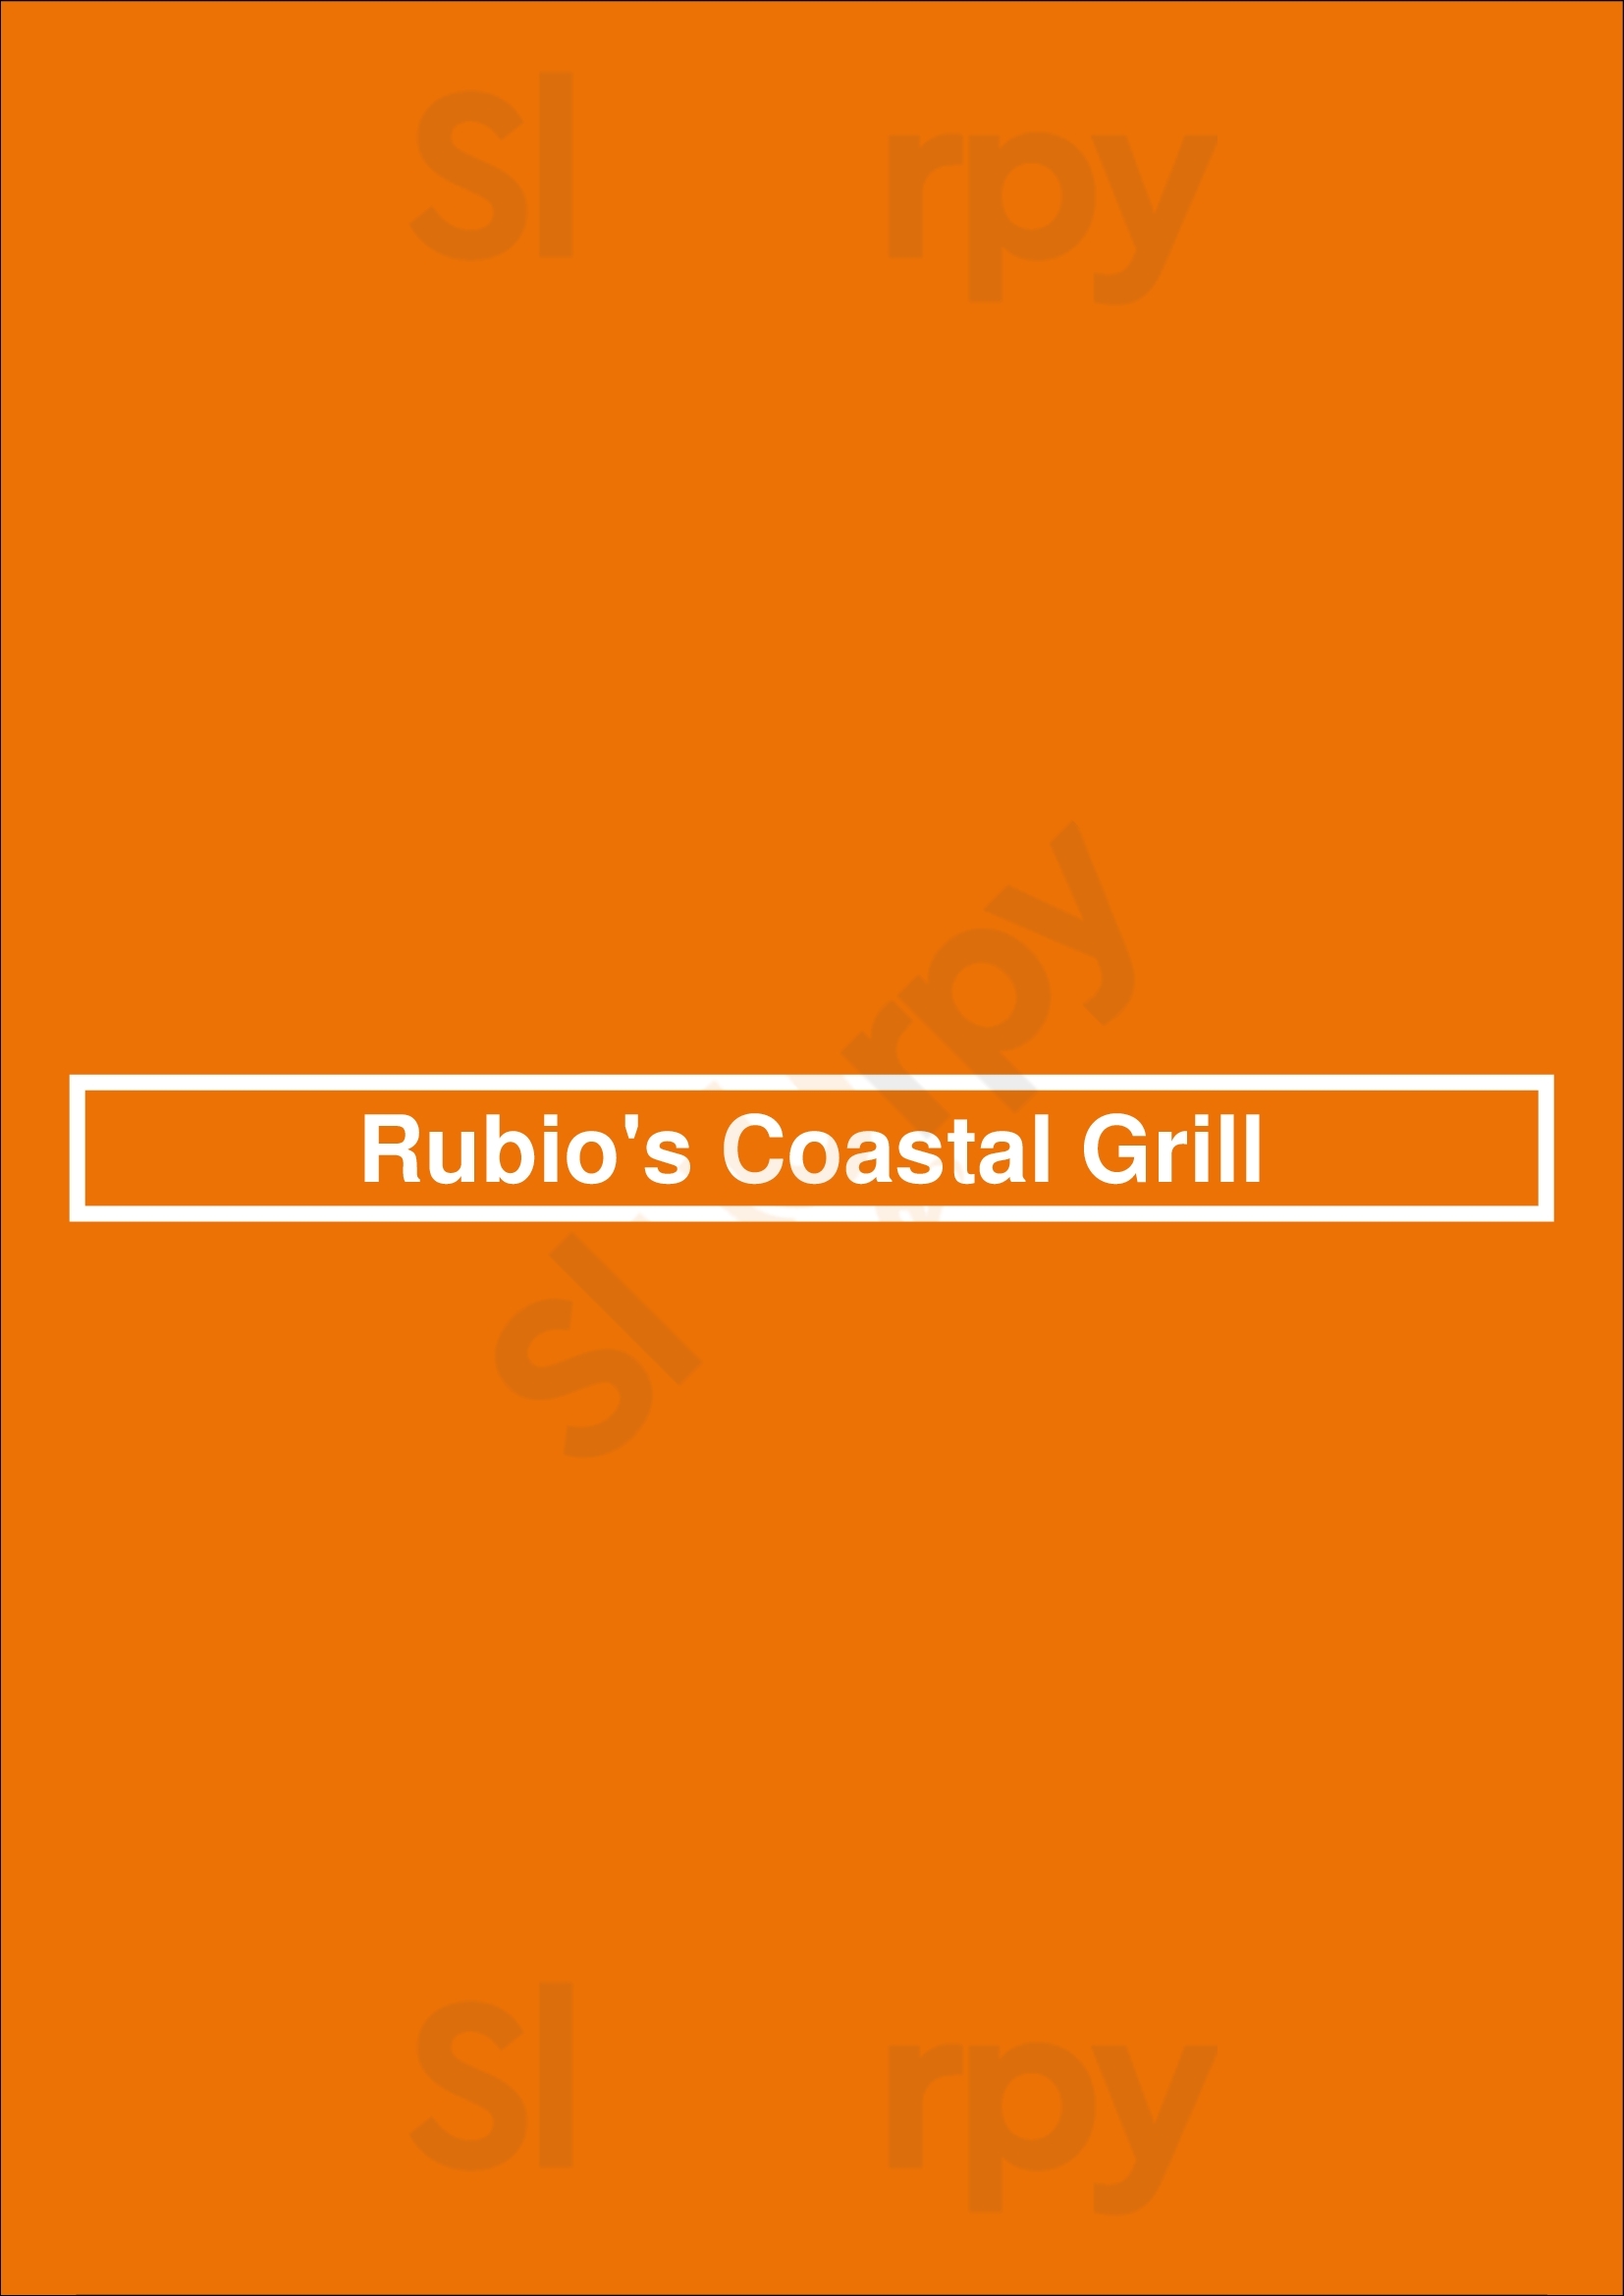 Rubio's Coastal Grill Bakersfield Menu - 1